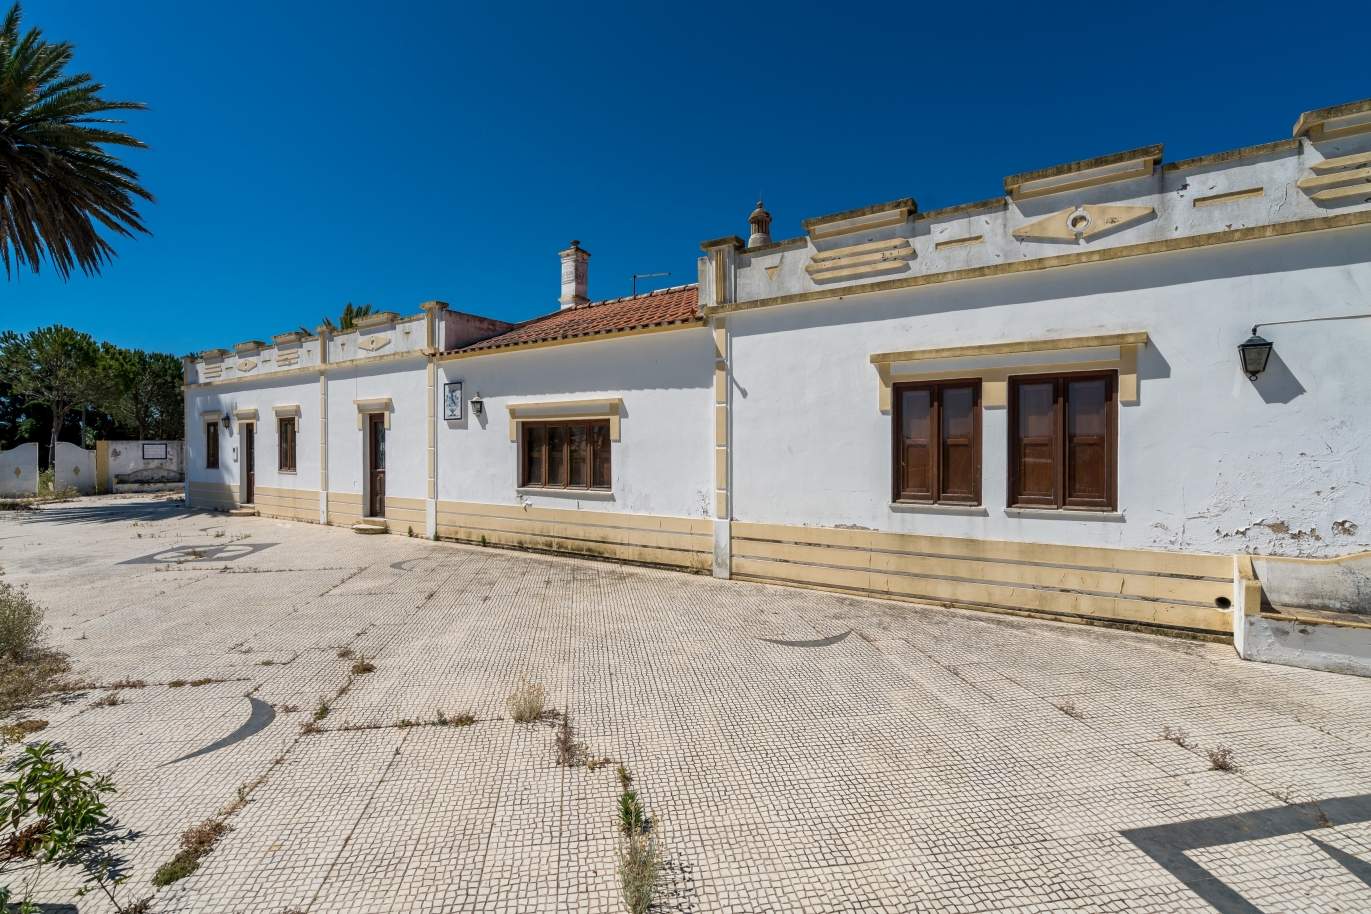 Venda de propriedade em Alcantarilha, Silves, Algarve_107979